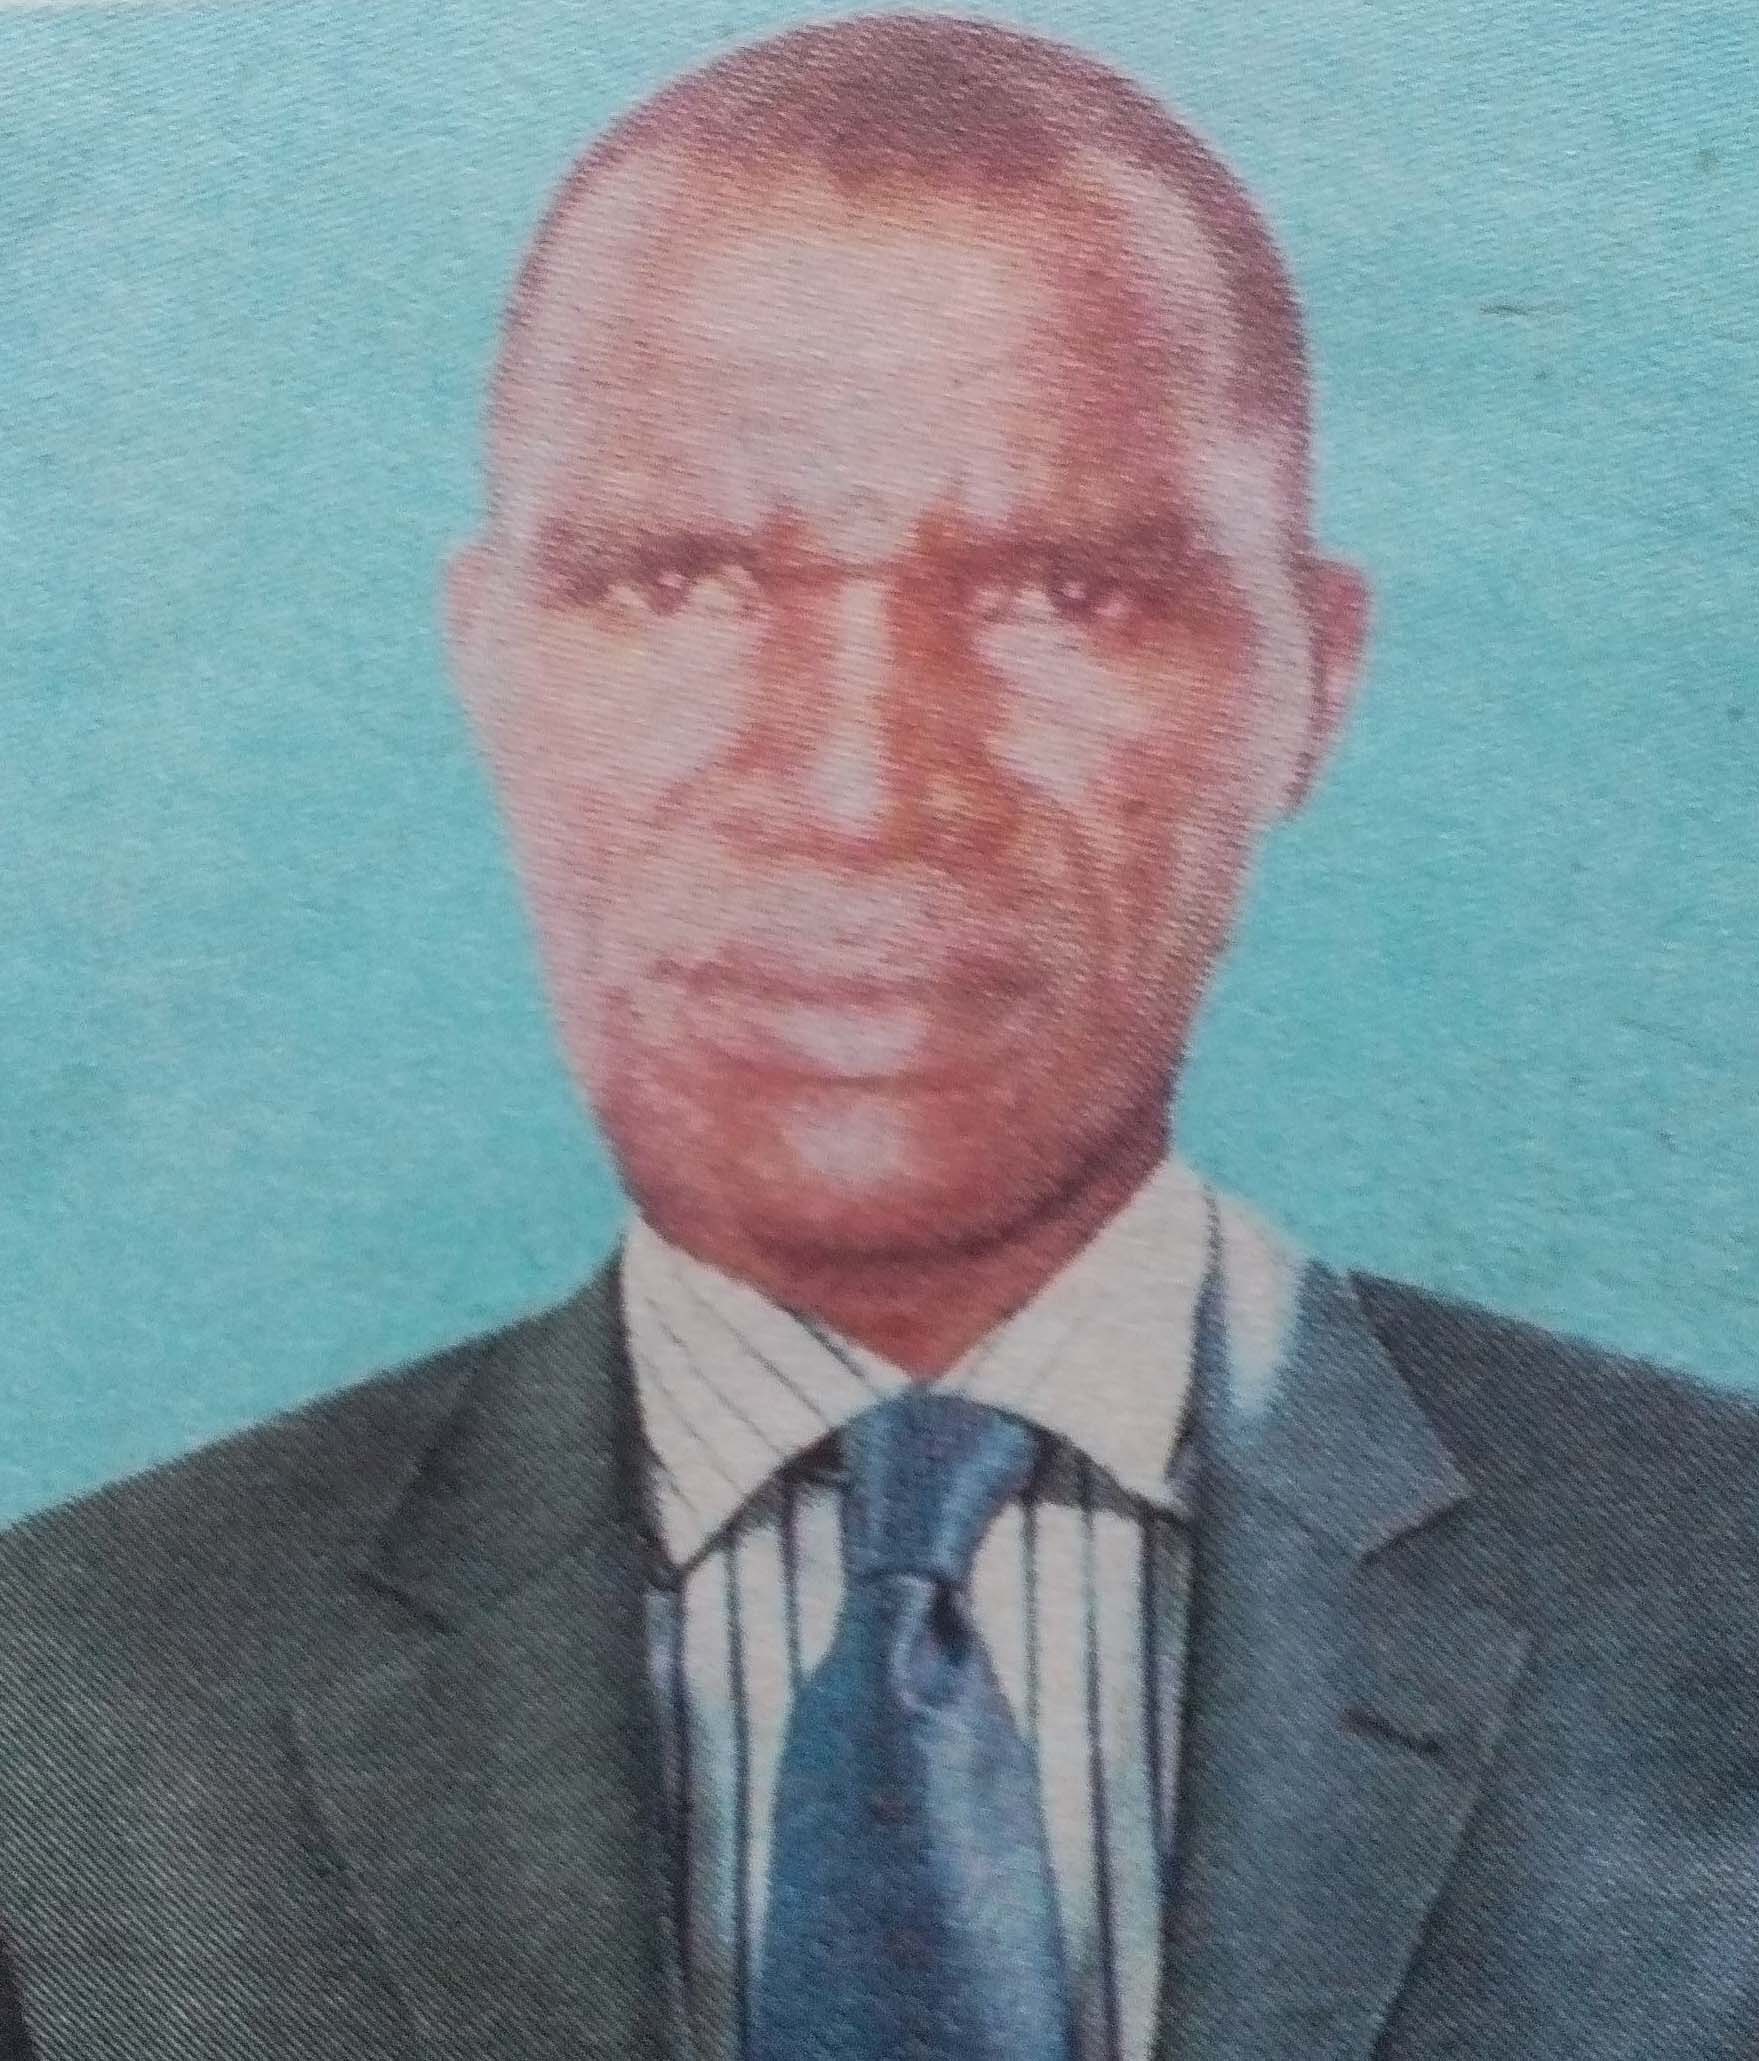 Obituary Image of Omwalimu John Maosa Obongo